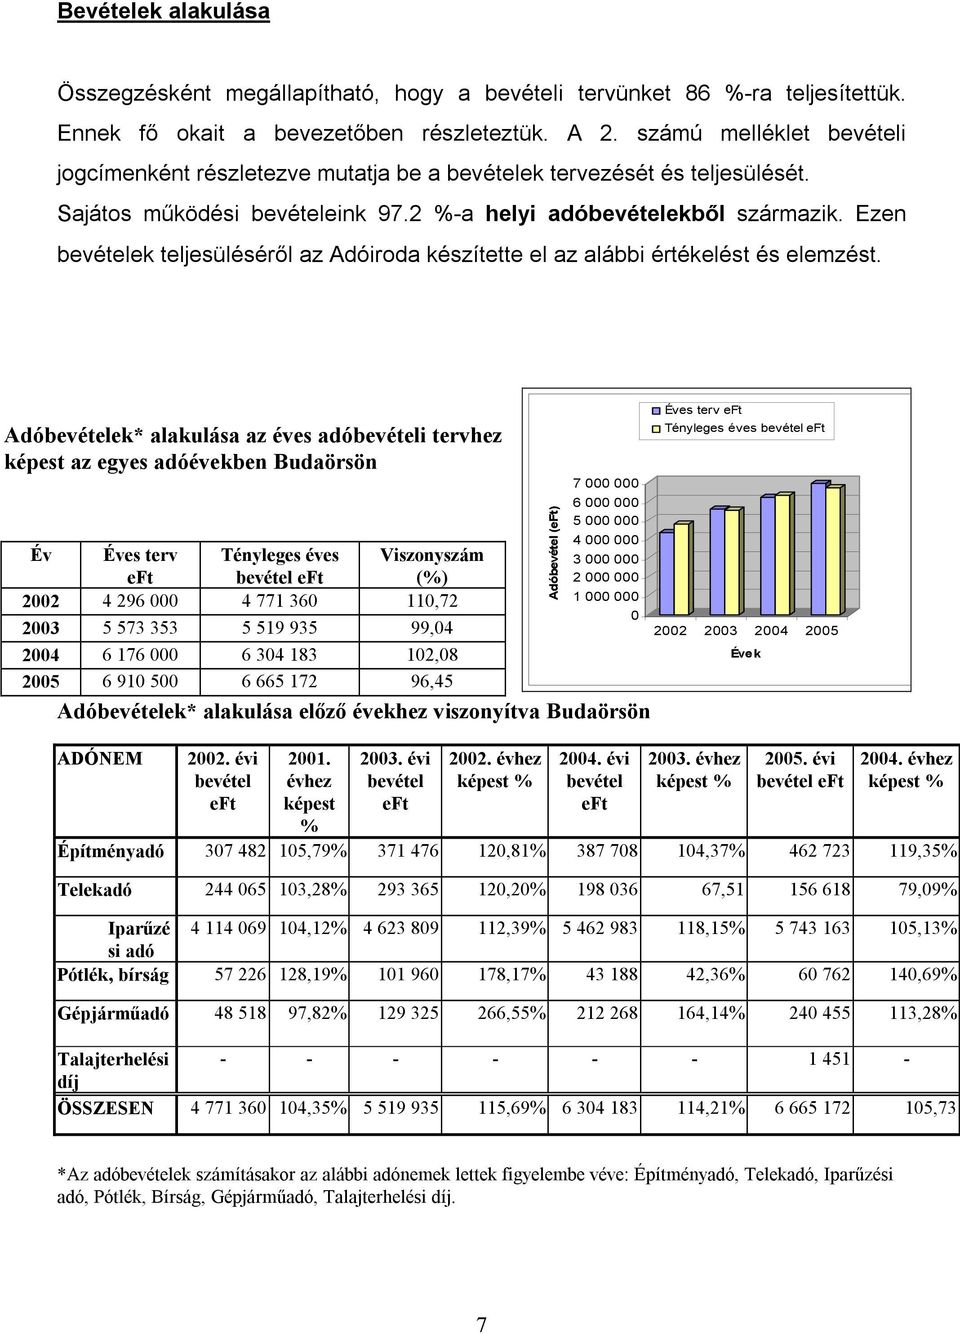 Ezen bevételek teljesüléséről az Adóiroda készítette el az alábbi értékelést és elemzést.